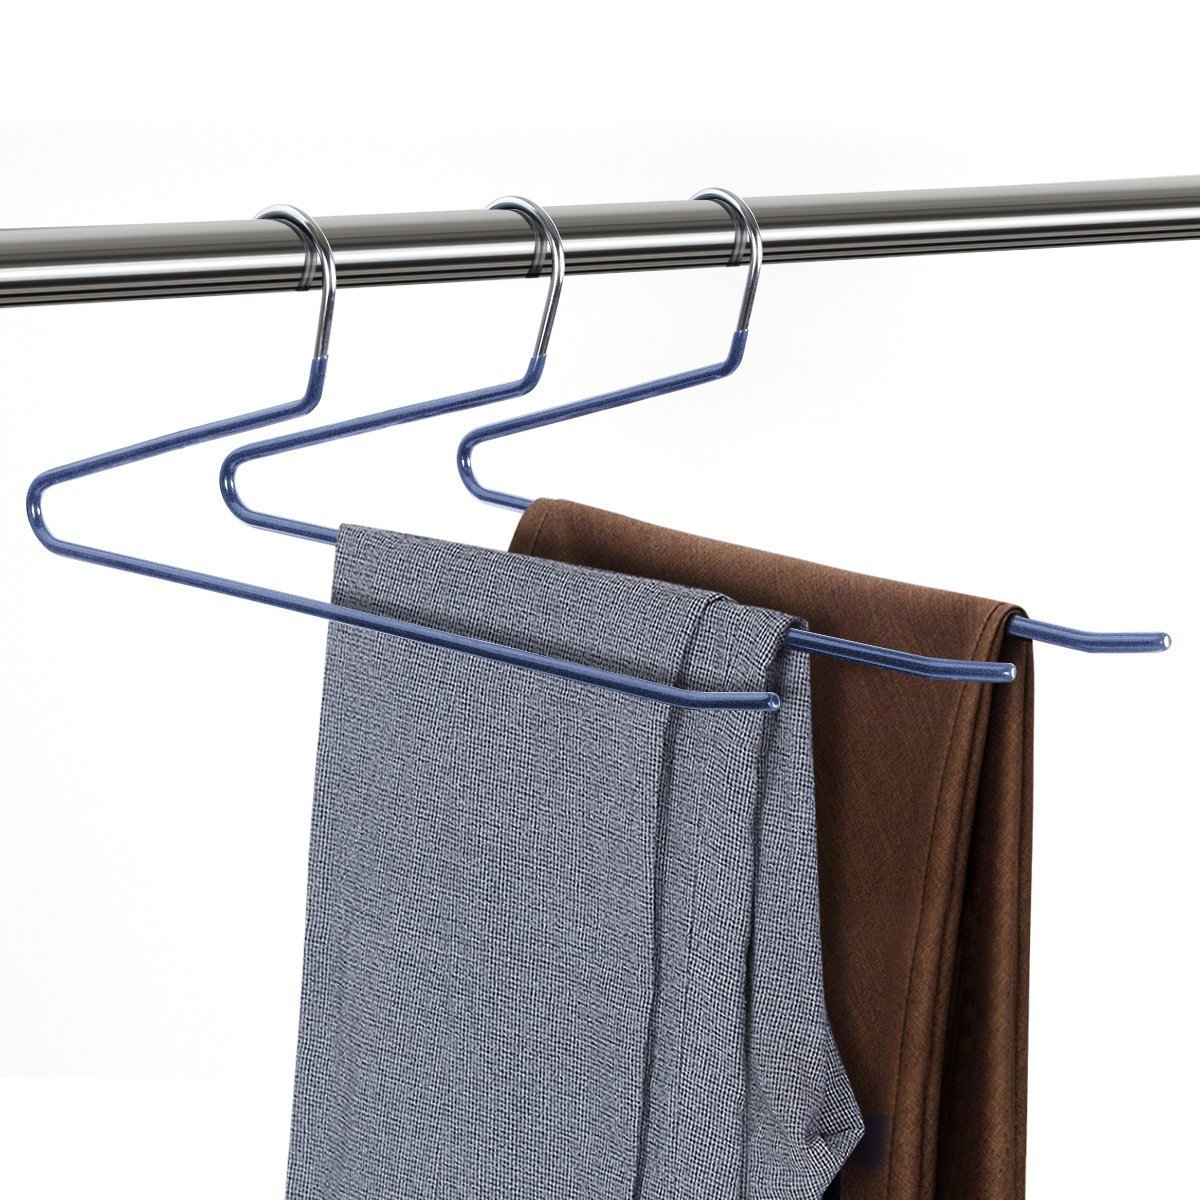 Cintre de pantalon en métal, 1 pièce, antidérapant, Type S, multi-couches, garde-robe, séchage humide et sec, gain de place, organisateur